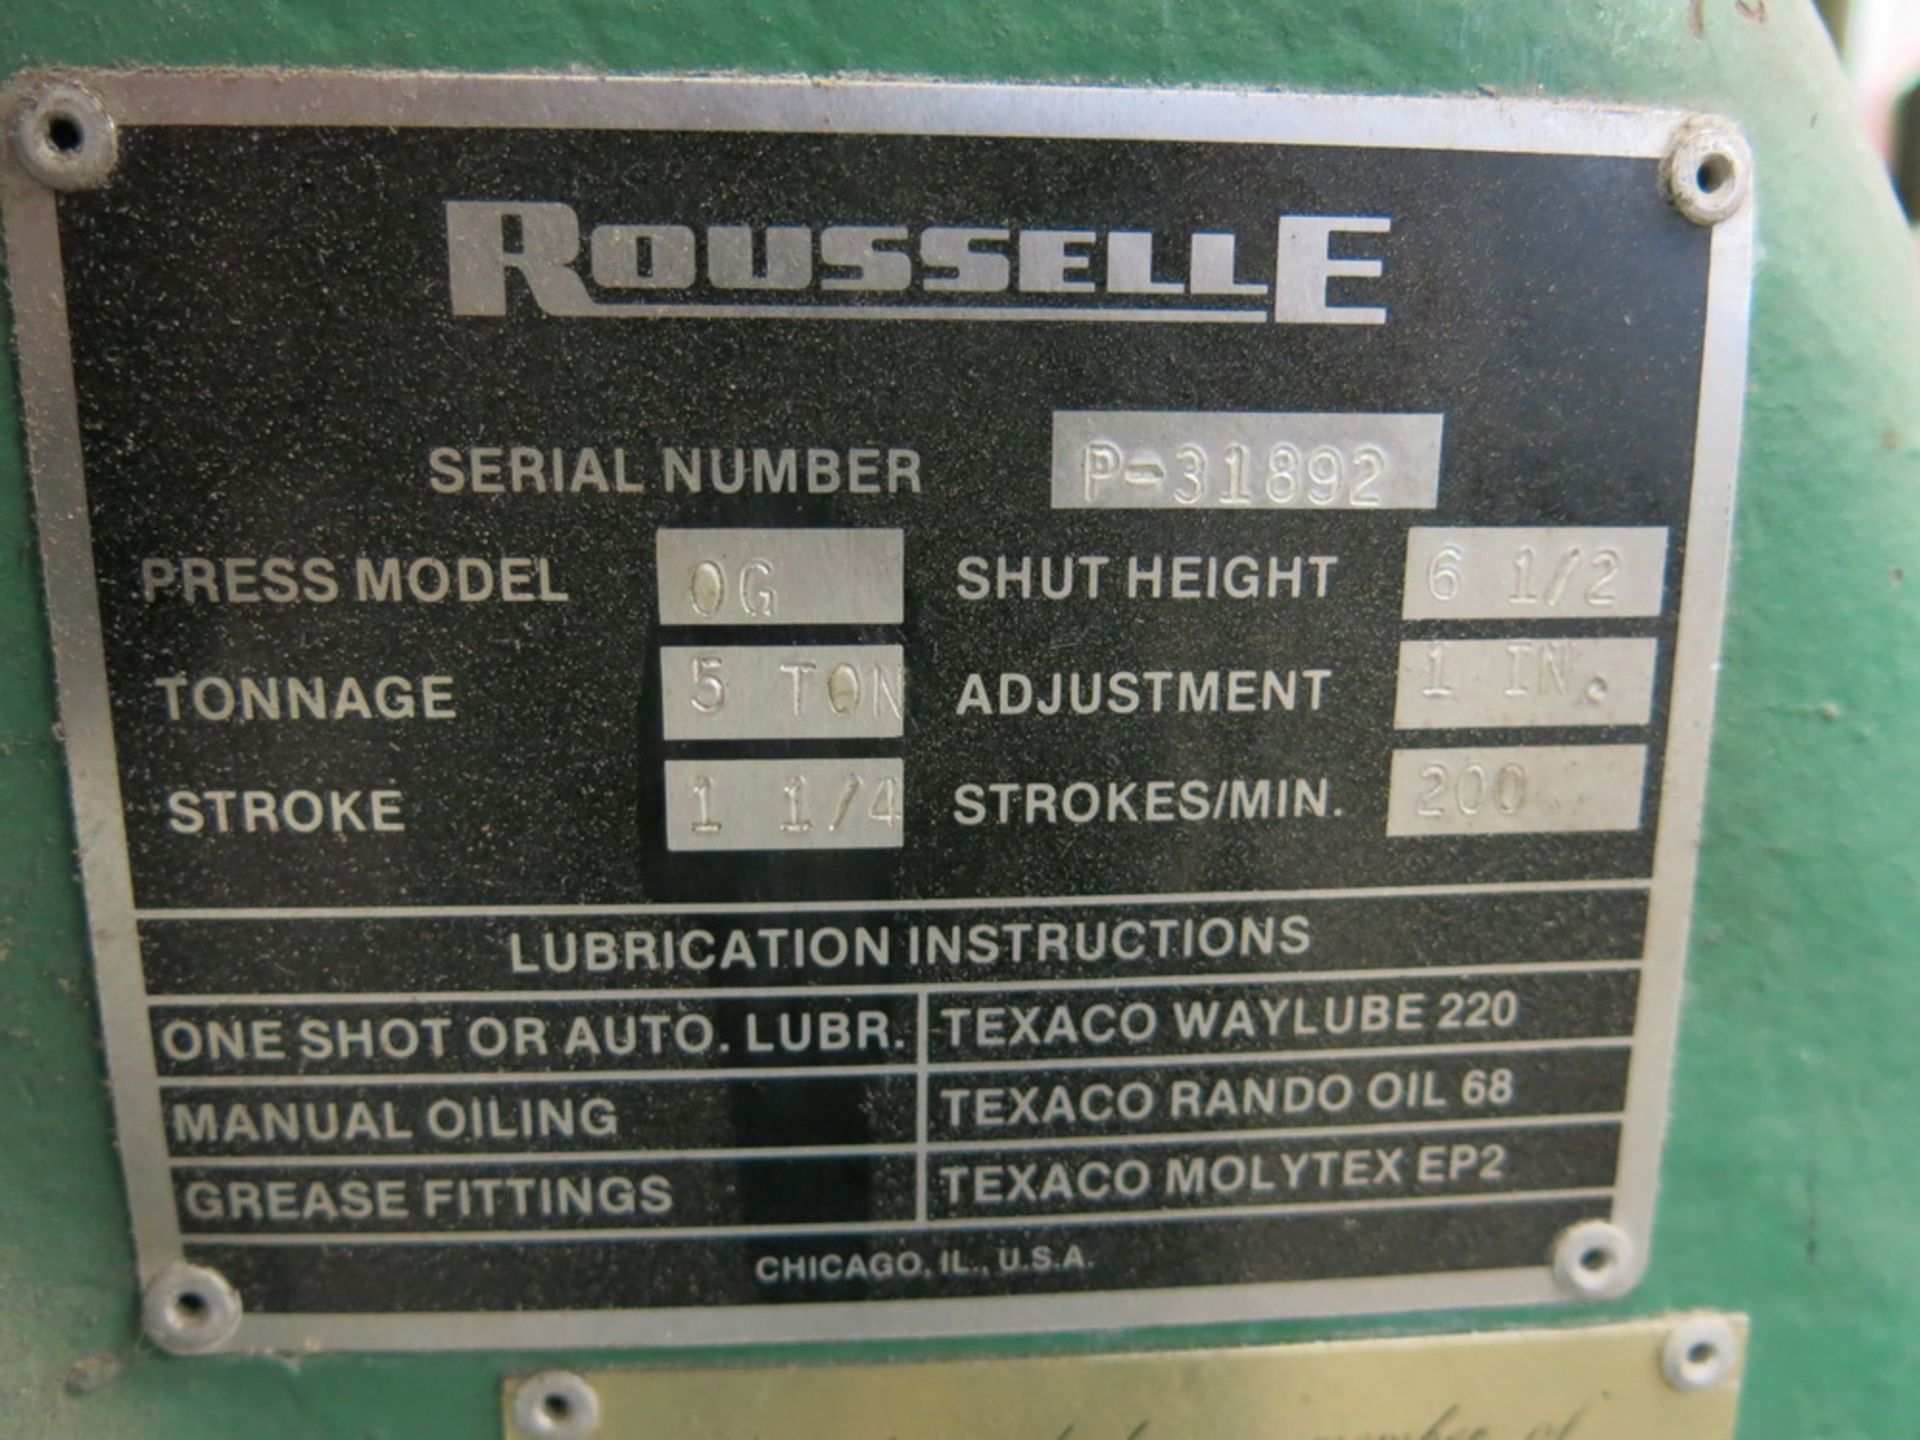 Rousselle Model OG 5-Ton OBI Press, 1 1/4" Stroke Press - Image 2 of 2